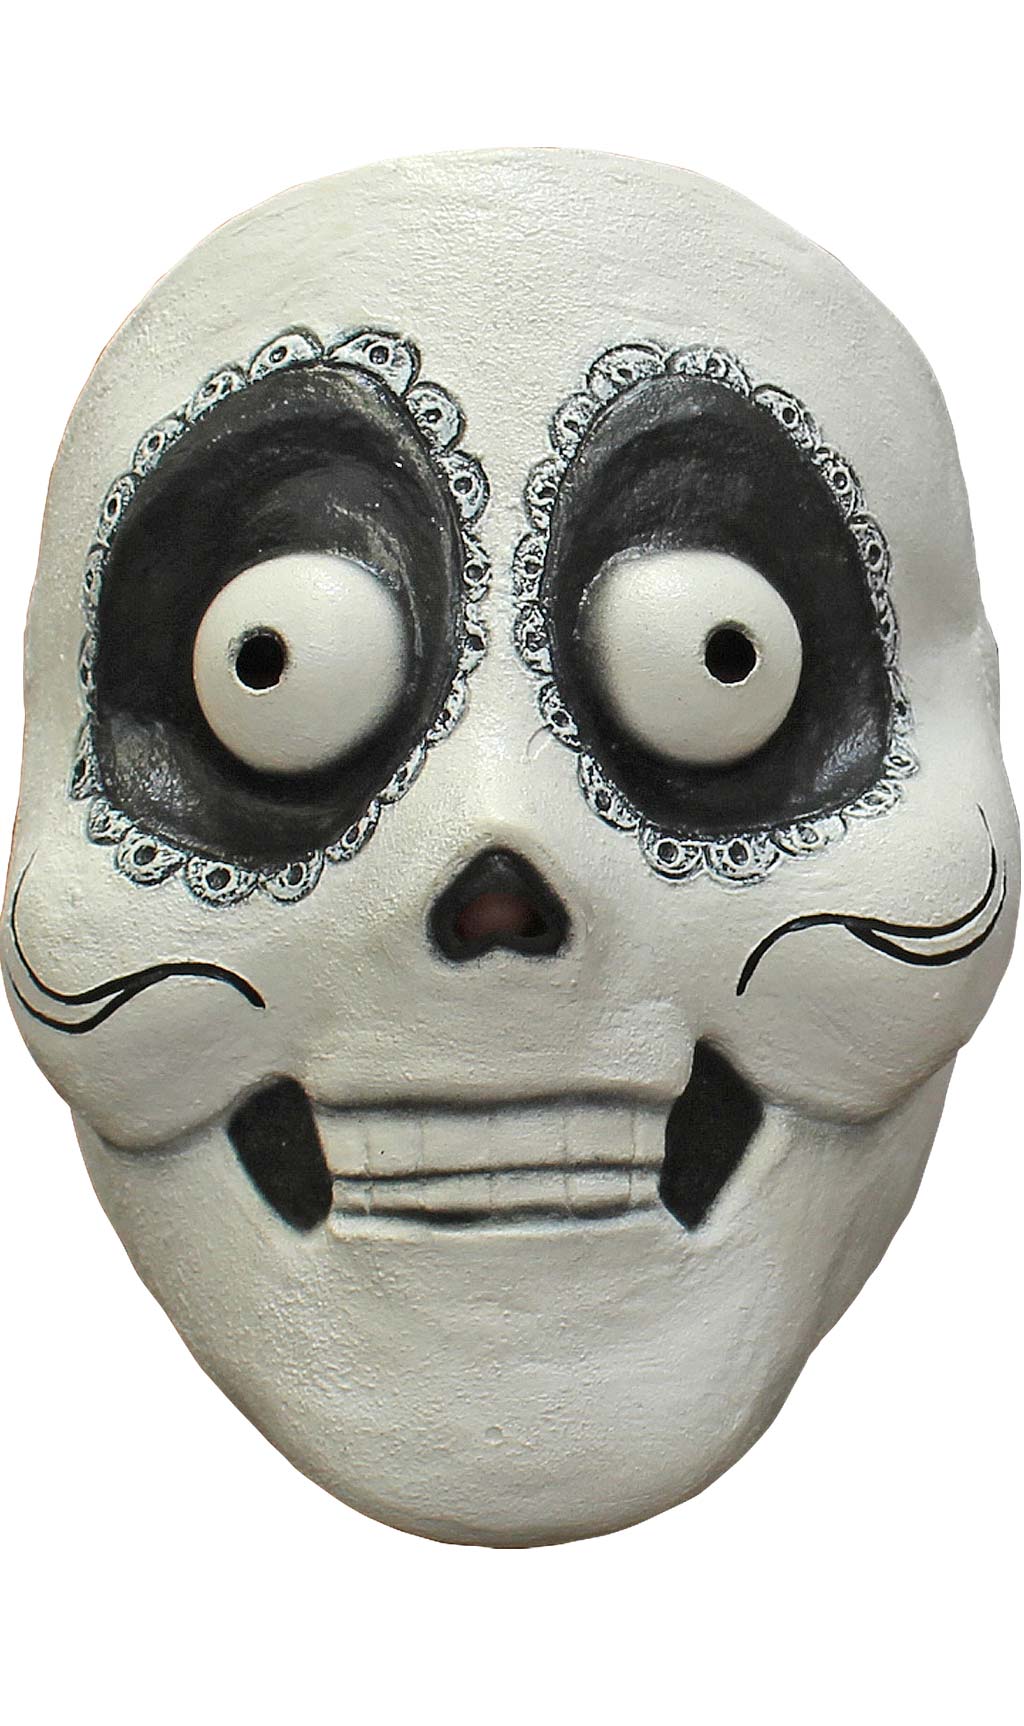 Erstaunliche Catrin Maske aus Latex